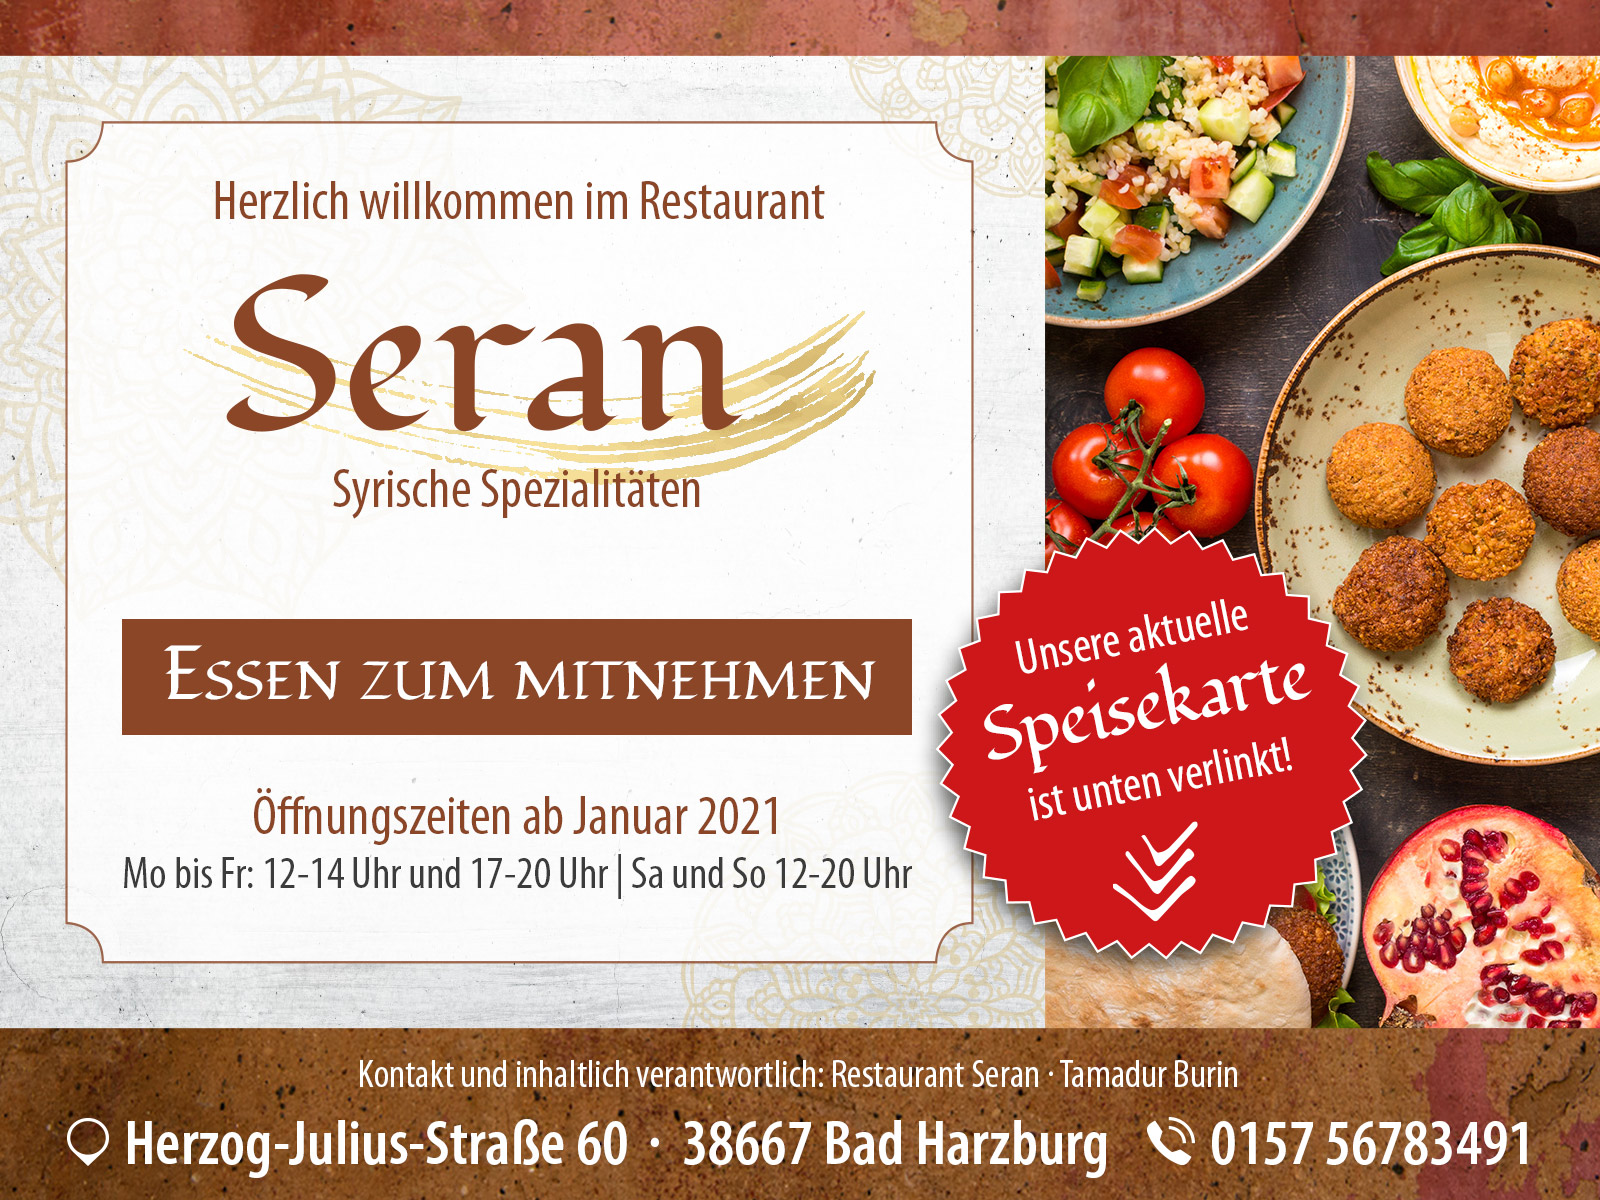 Restaurant Seran Bad Harzburg - Syrische Spezialitäten